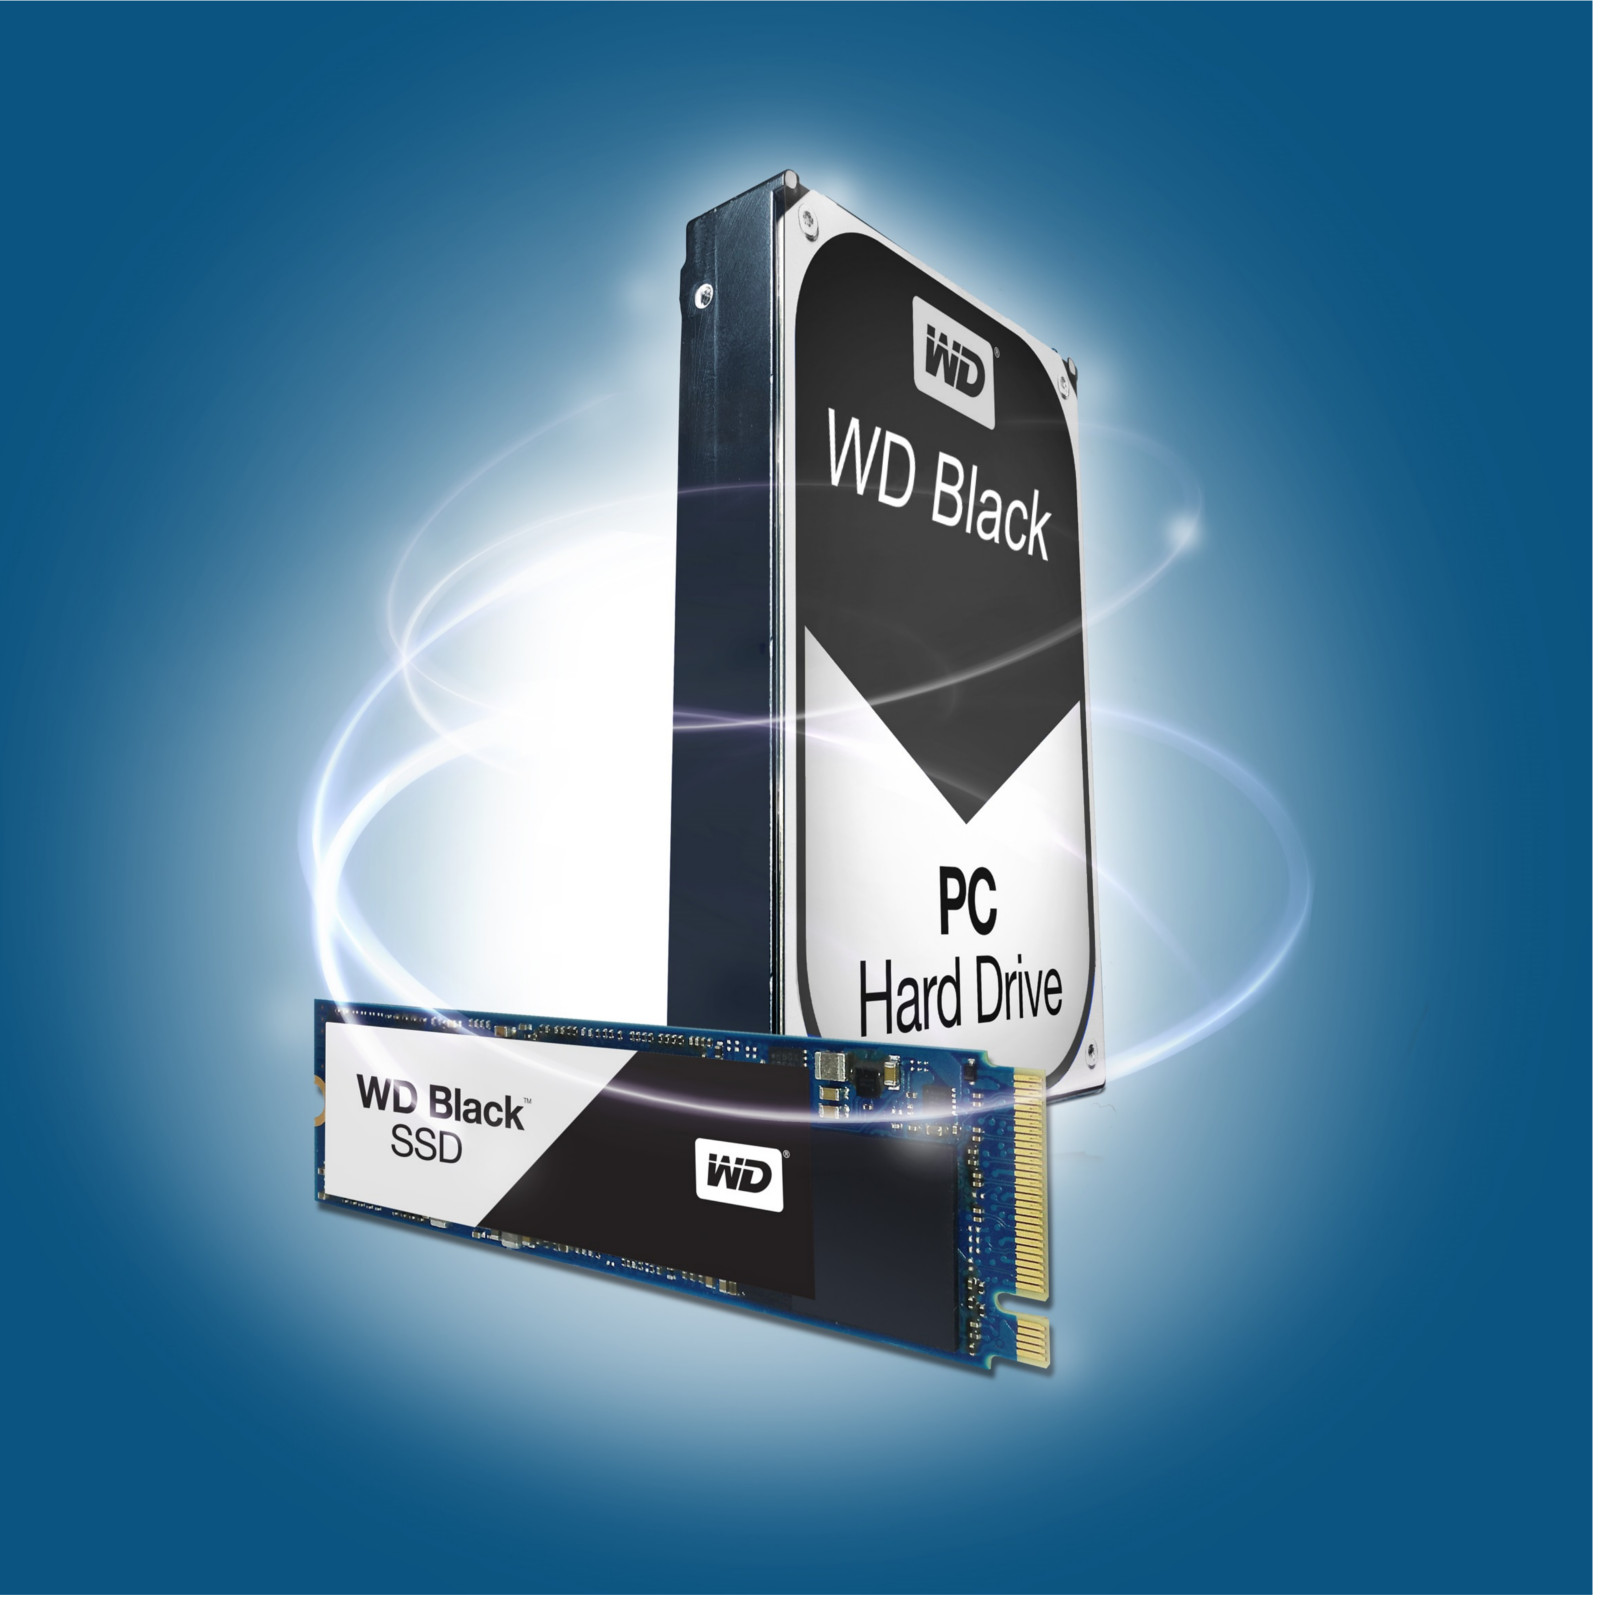 WD - WD Black 500GB M.2 SSD  2TB Performance HDD Bundle